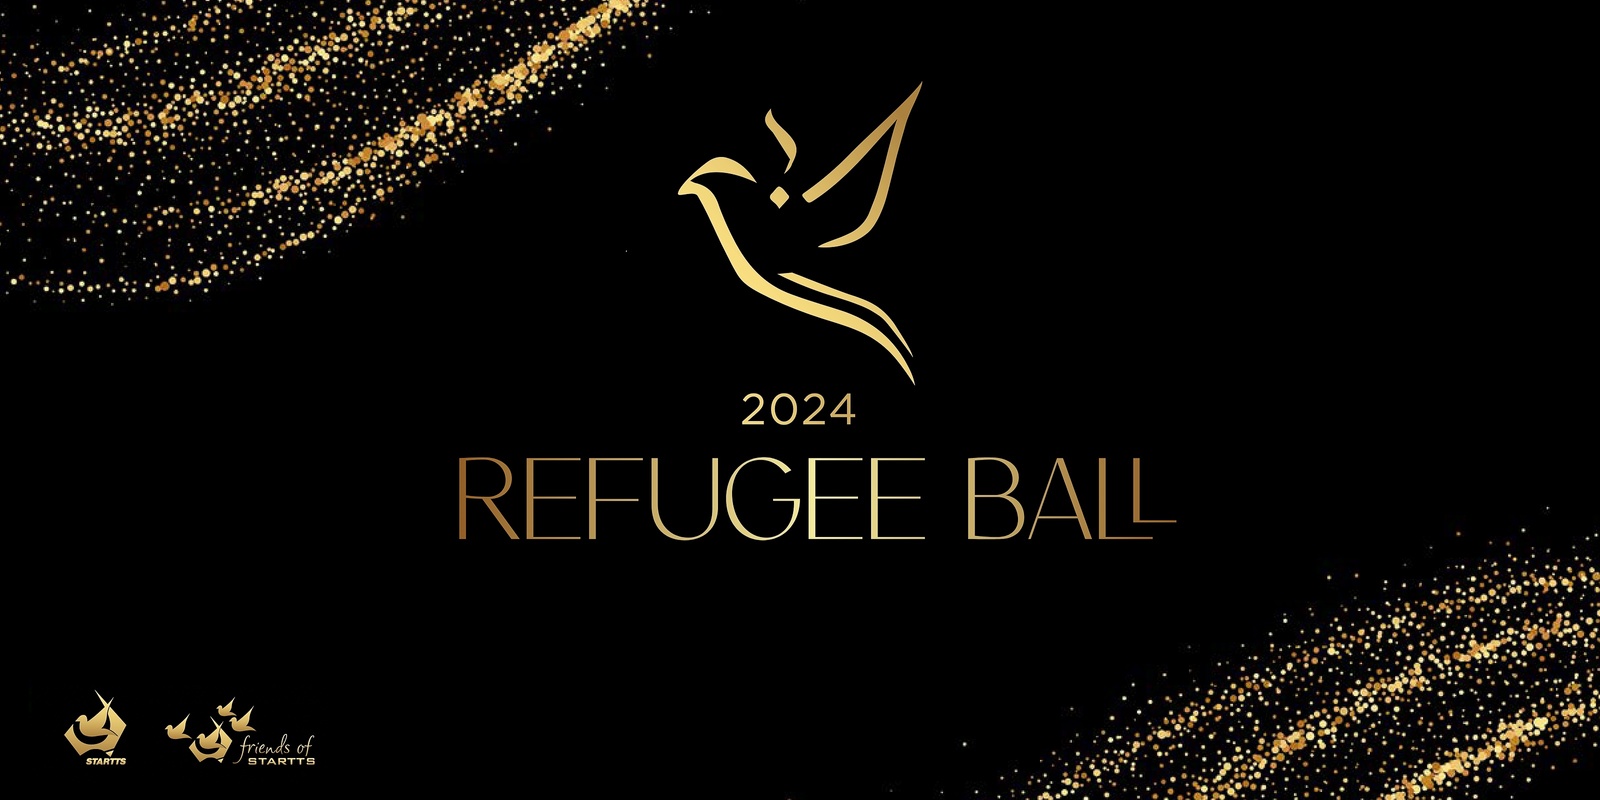 Banner image for 2024 Refugee Ball & Fundraiser.